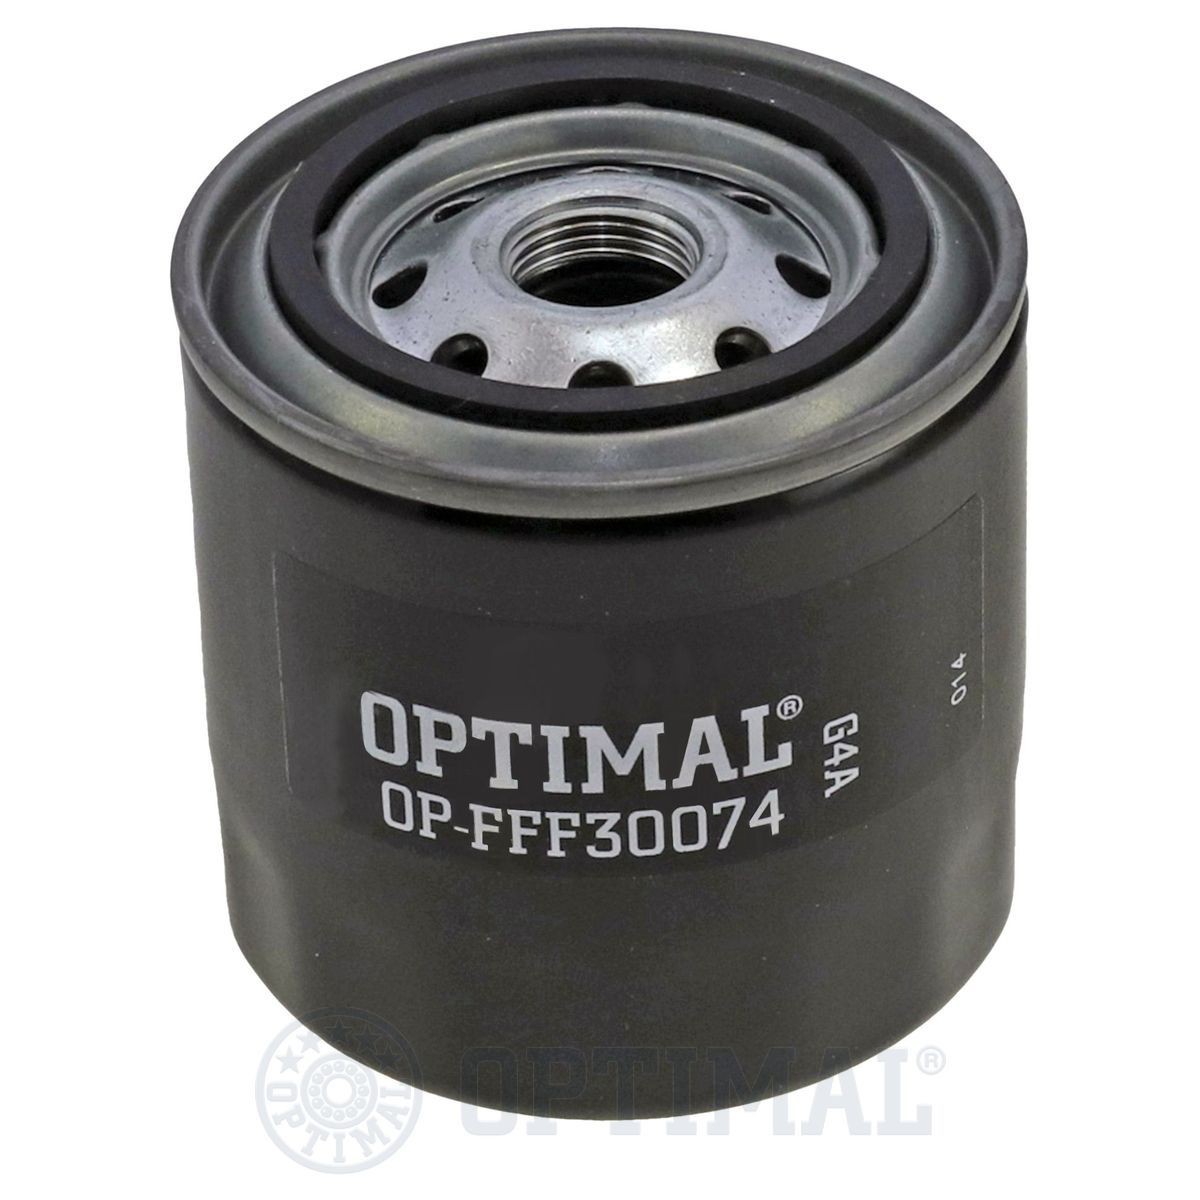 OPTIMAL OP-FFF30074 Fuel filter 5-13240009-0